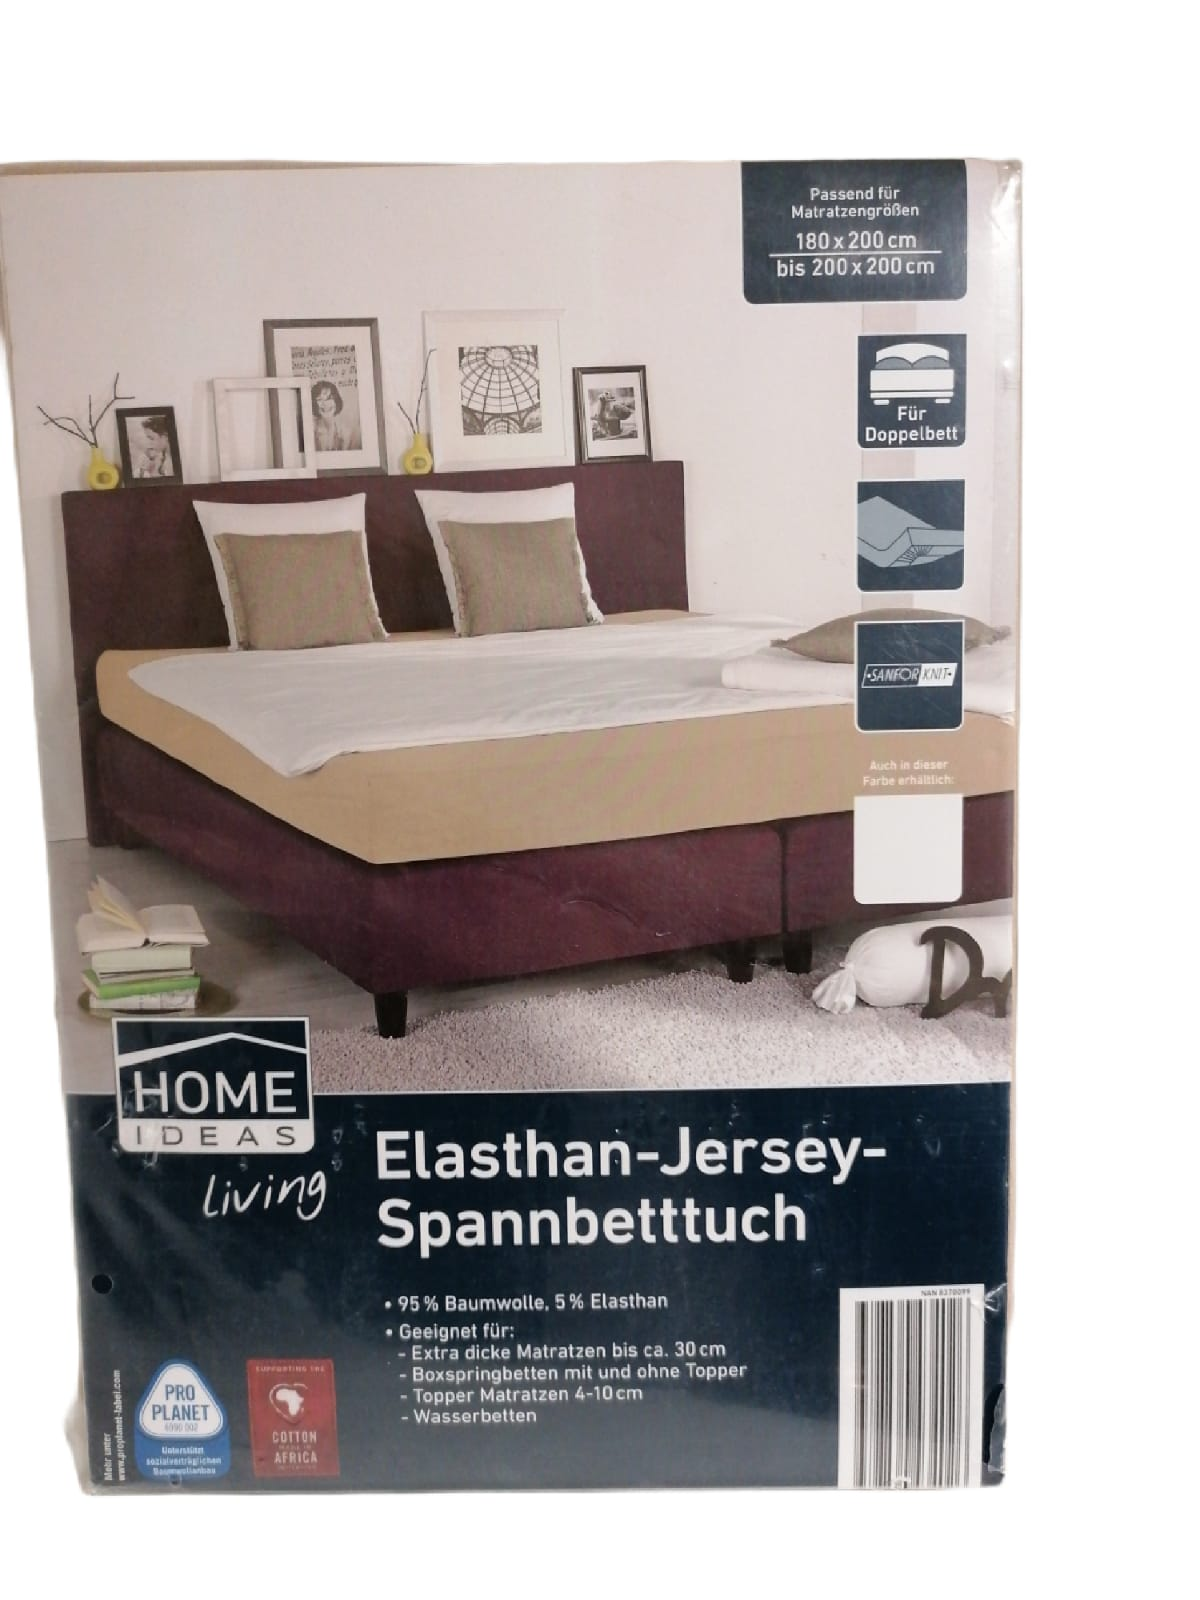 Elasthan_Jersey-Spannbetttuch 180 x 200 cm bis 200 x 200 cm